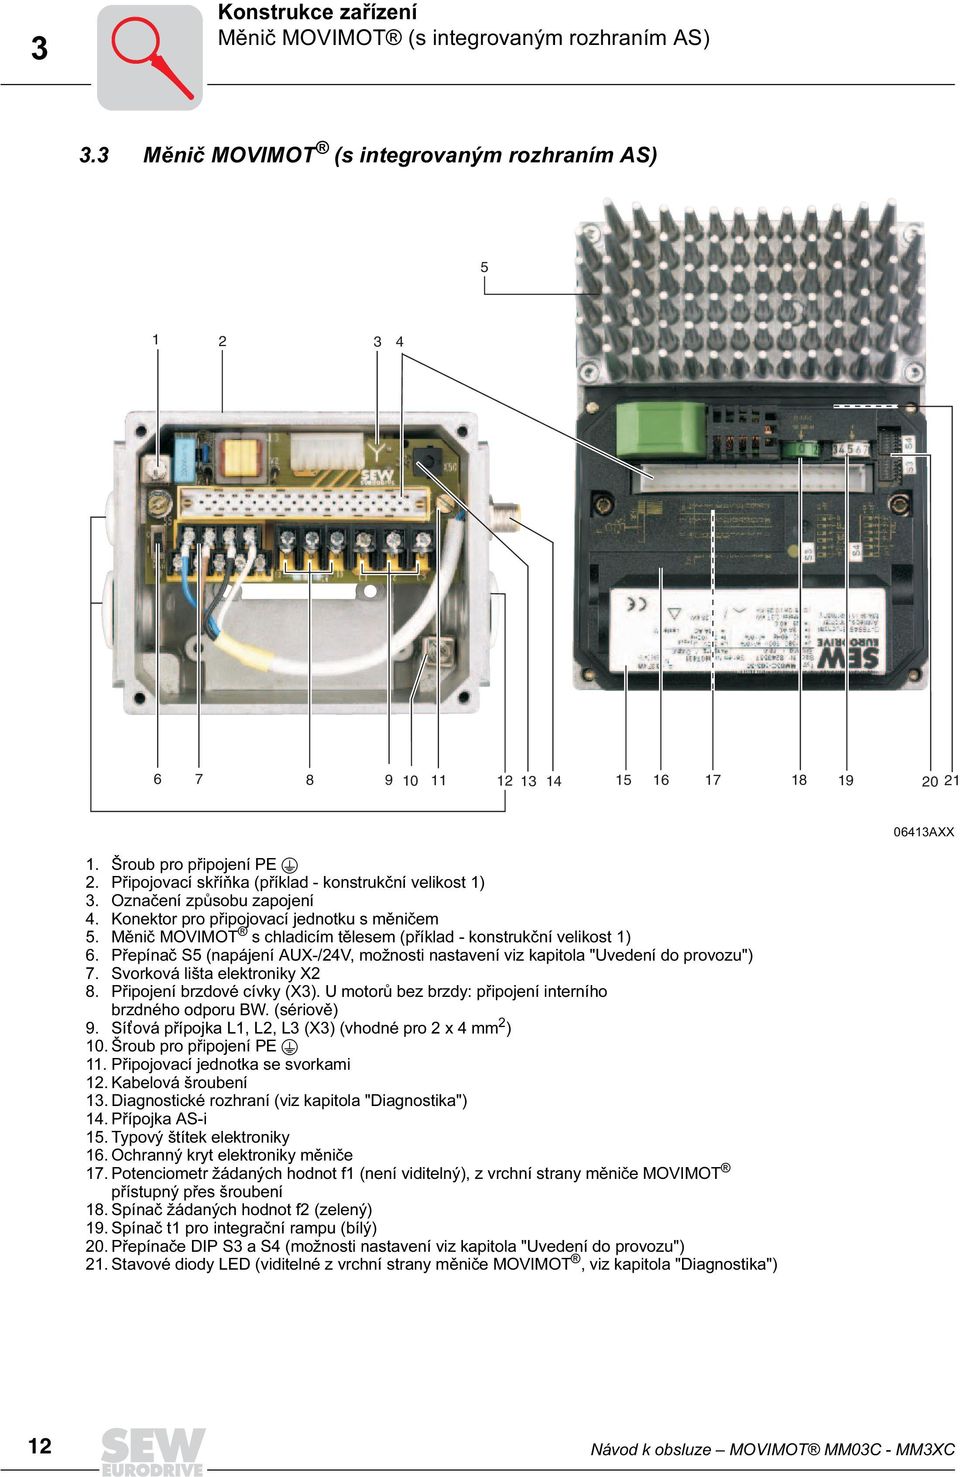 Měnič MOVIMOT s chladicím tělesem (příklad - konstrukční velikost 1) 6. Přepínač S5 (napájení AUX-/24V, možnosti nastavení viz kapitola "Uvedení do provozu") 7. Svorková lišta elektroniky X2 8.